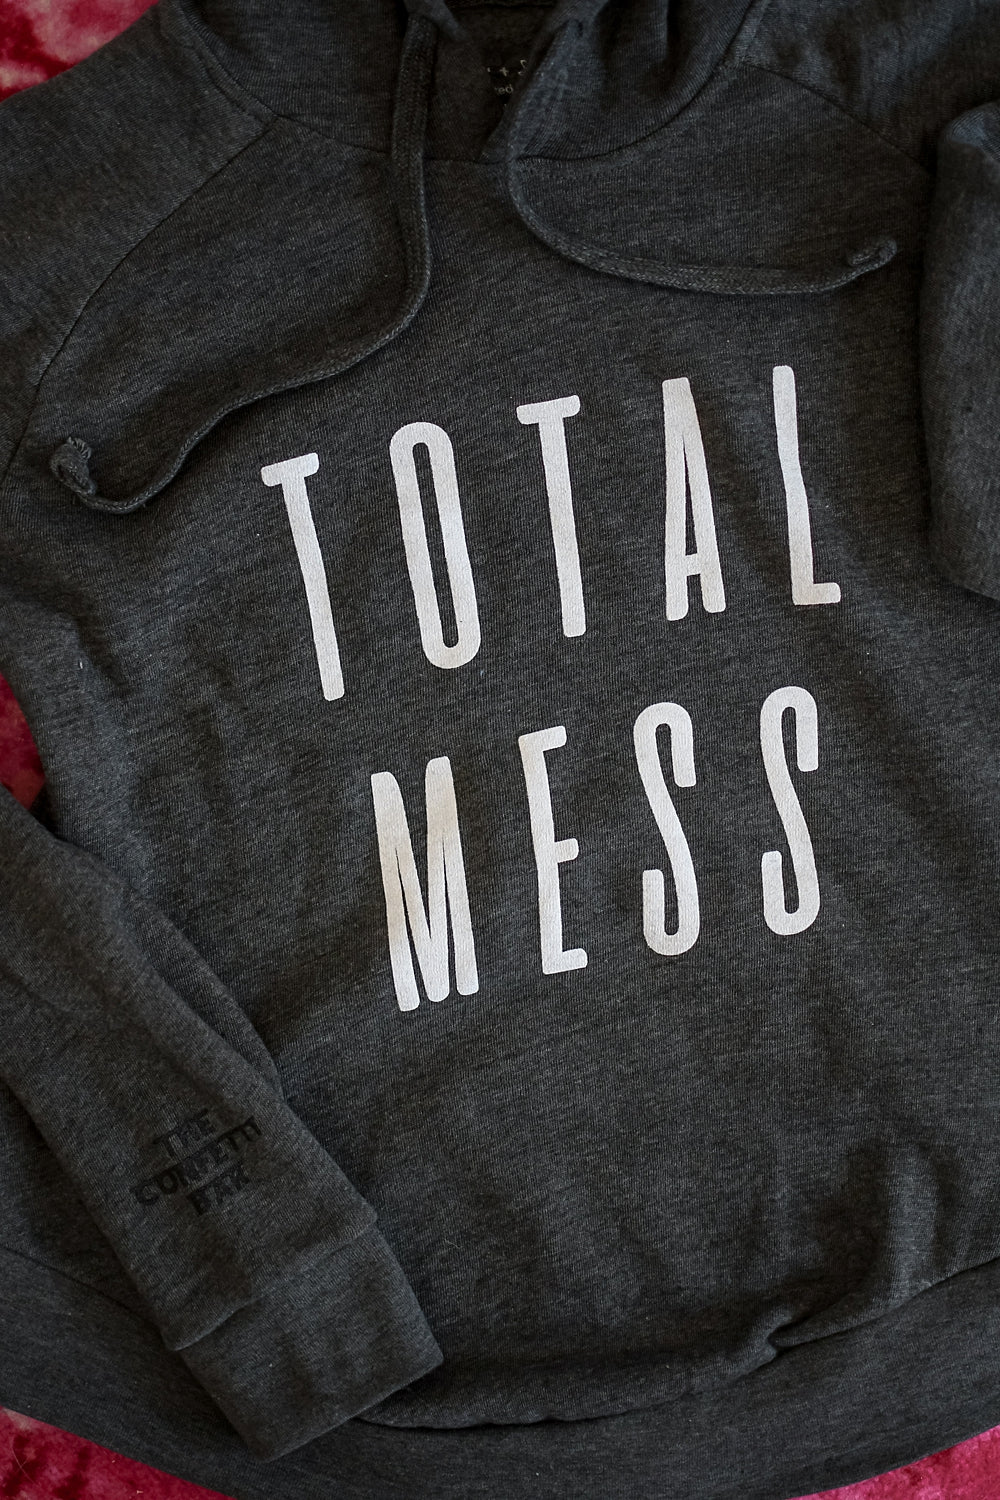 Total Mess (but also beautiful) Fleece Hoodie Sweatshirt